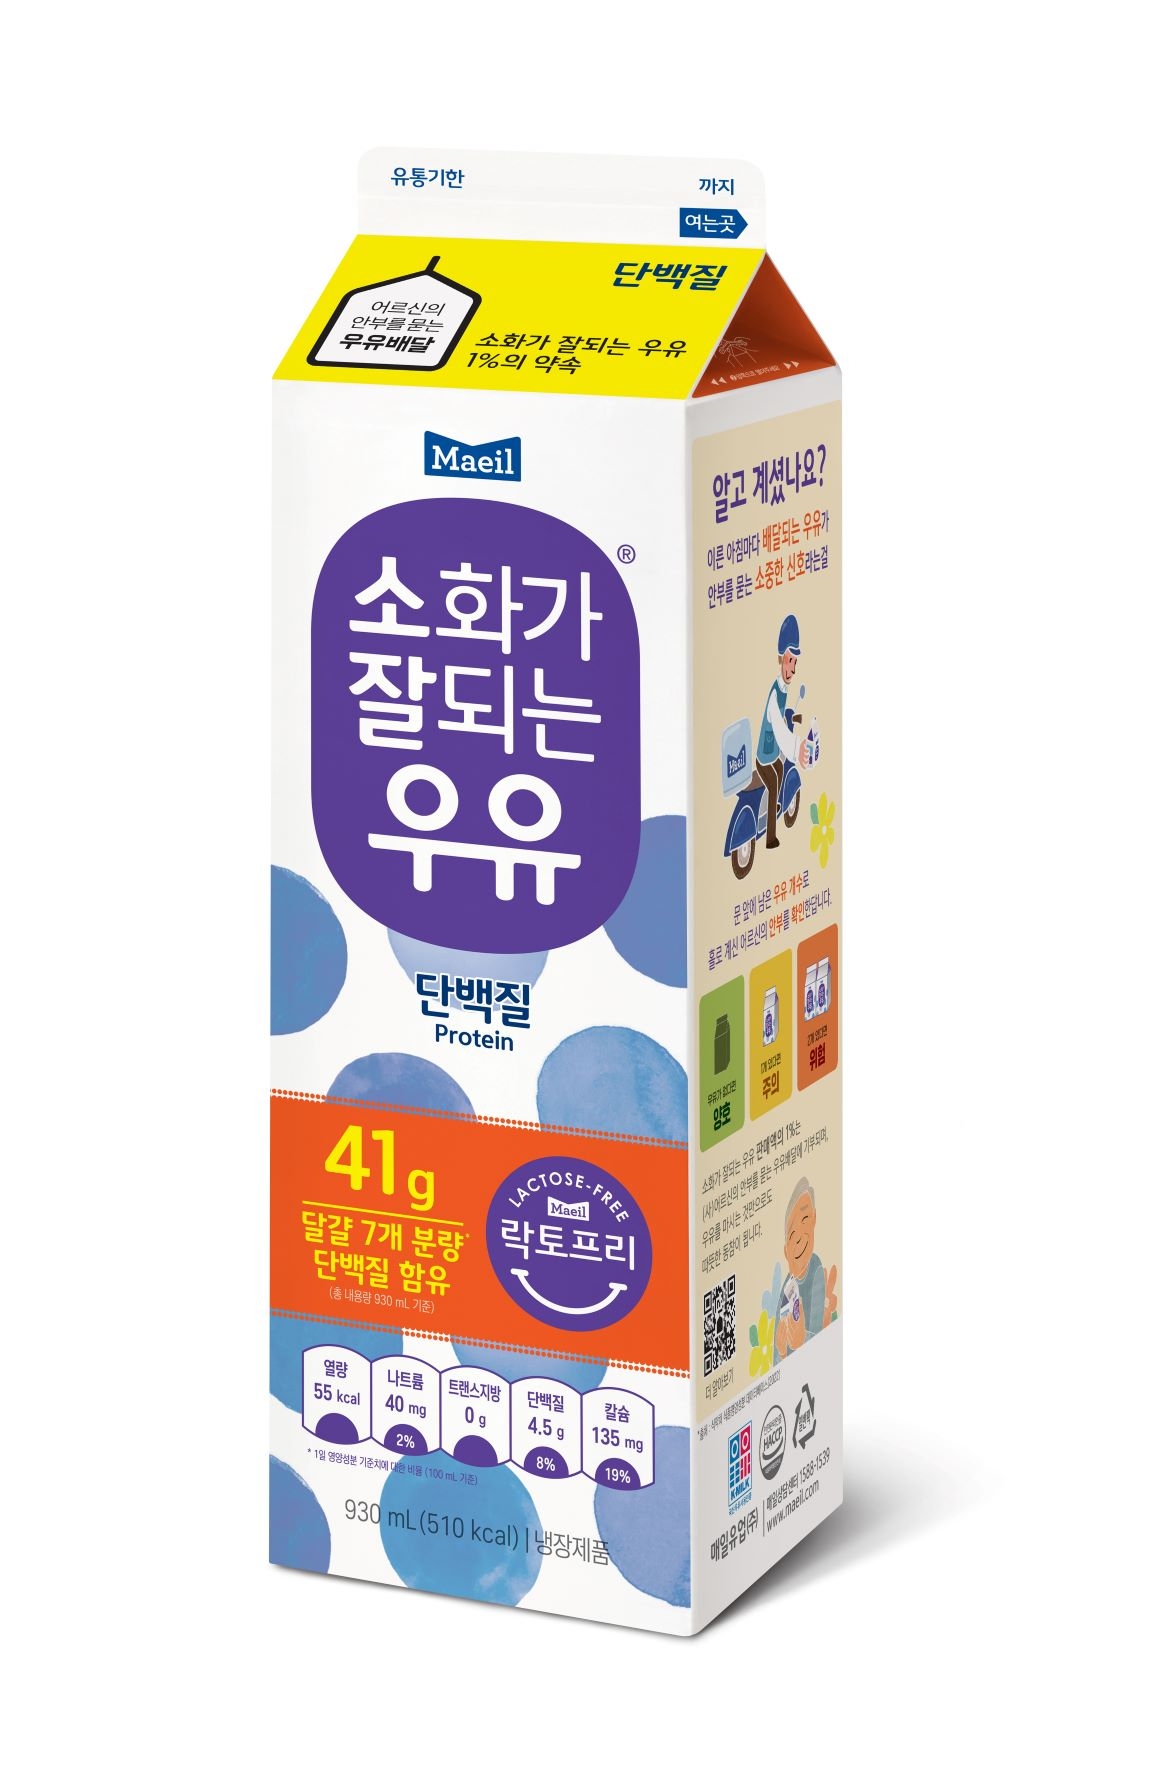 [생활경제 이슈] 매일유업, '소화가 잘되는 우유 단백질' 출시 外